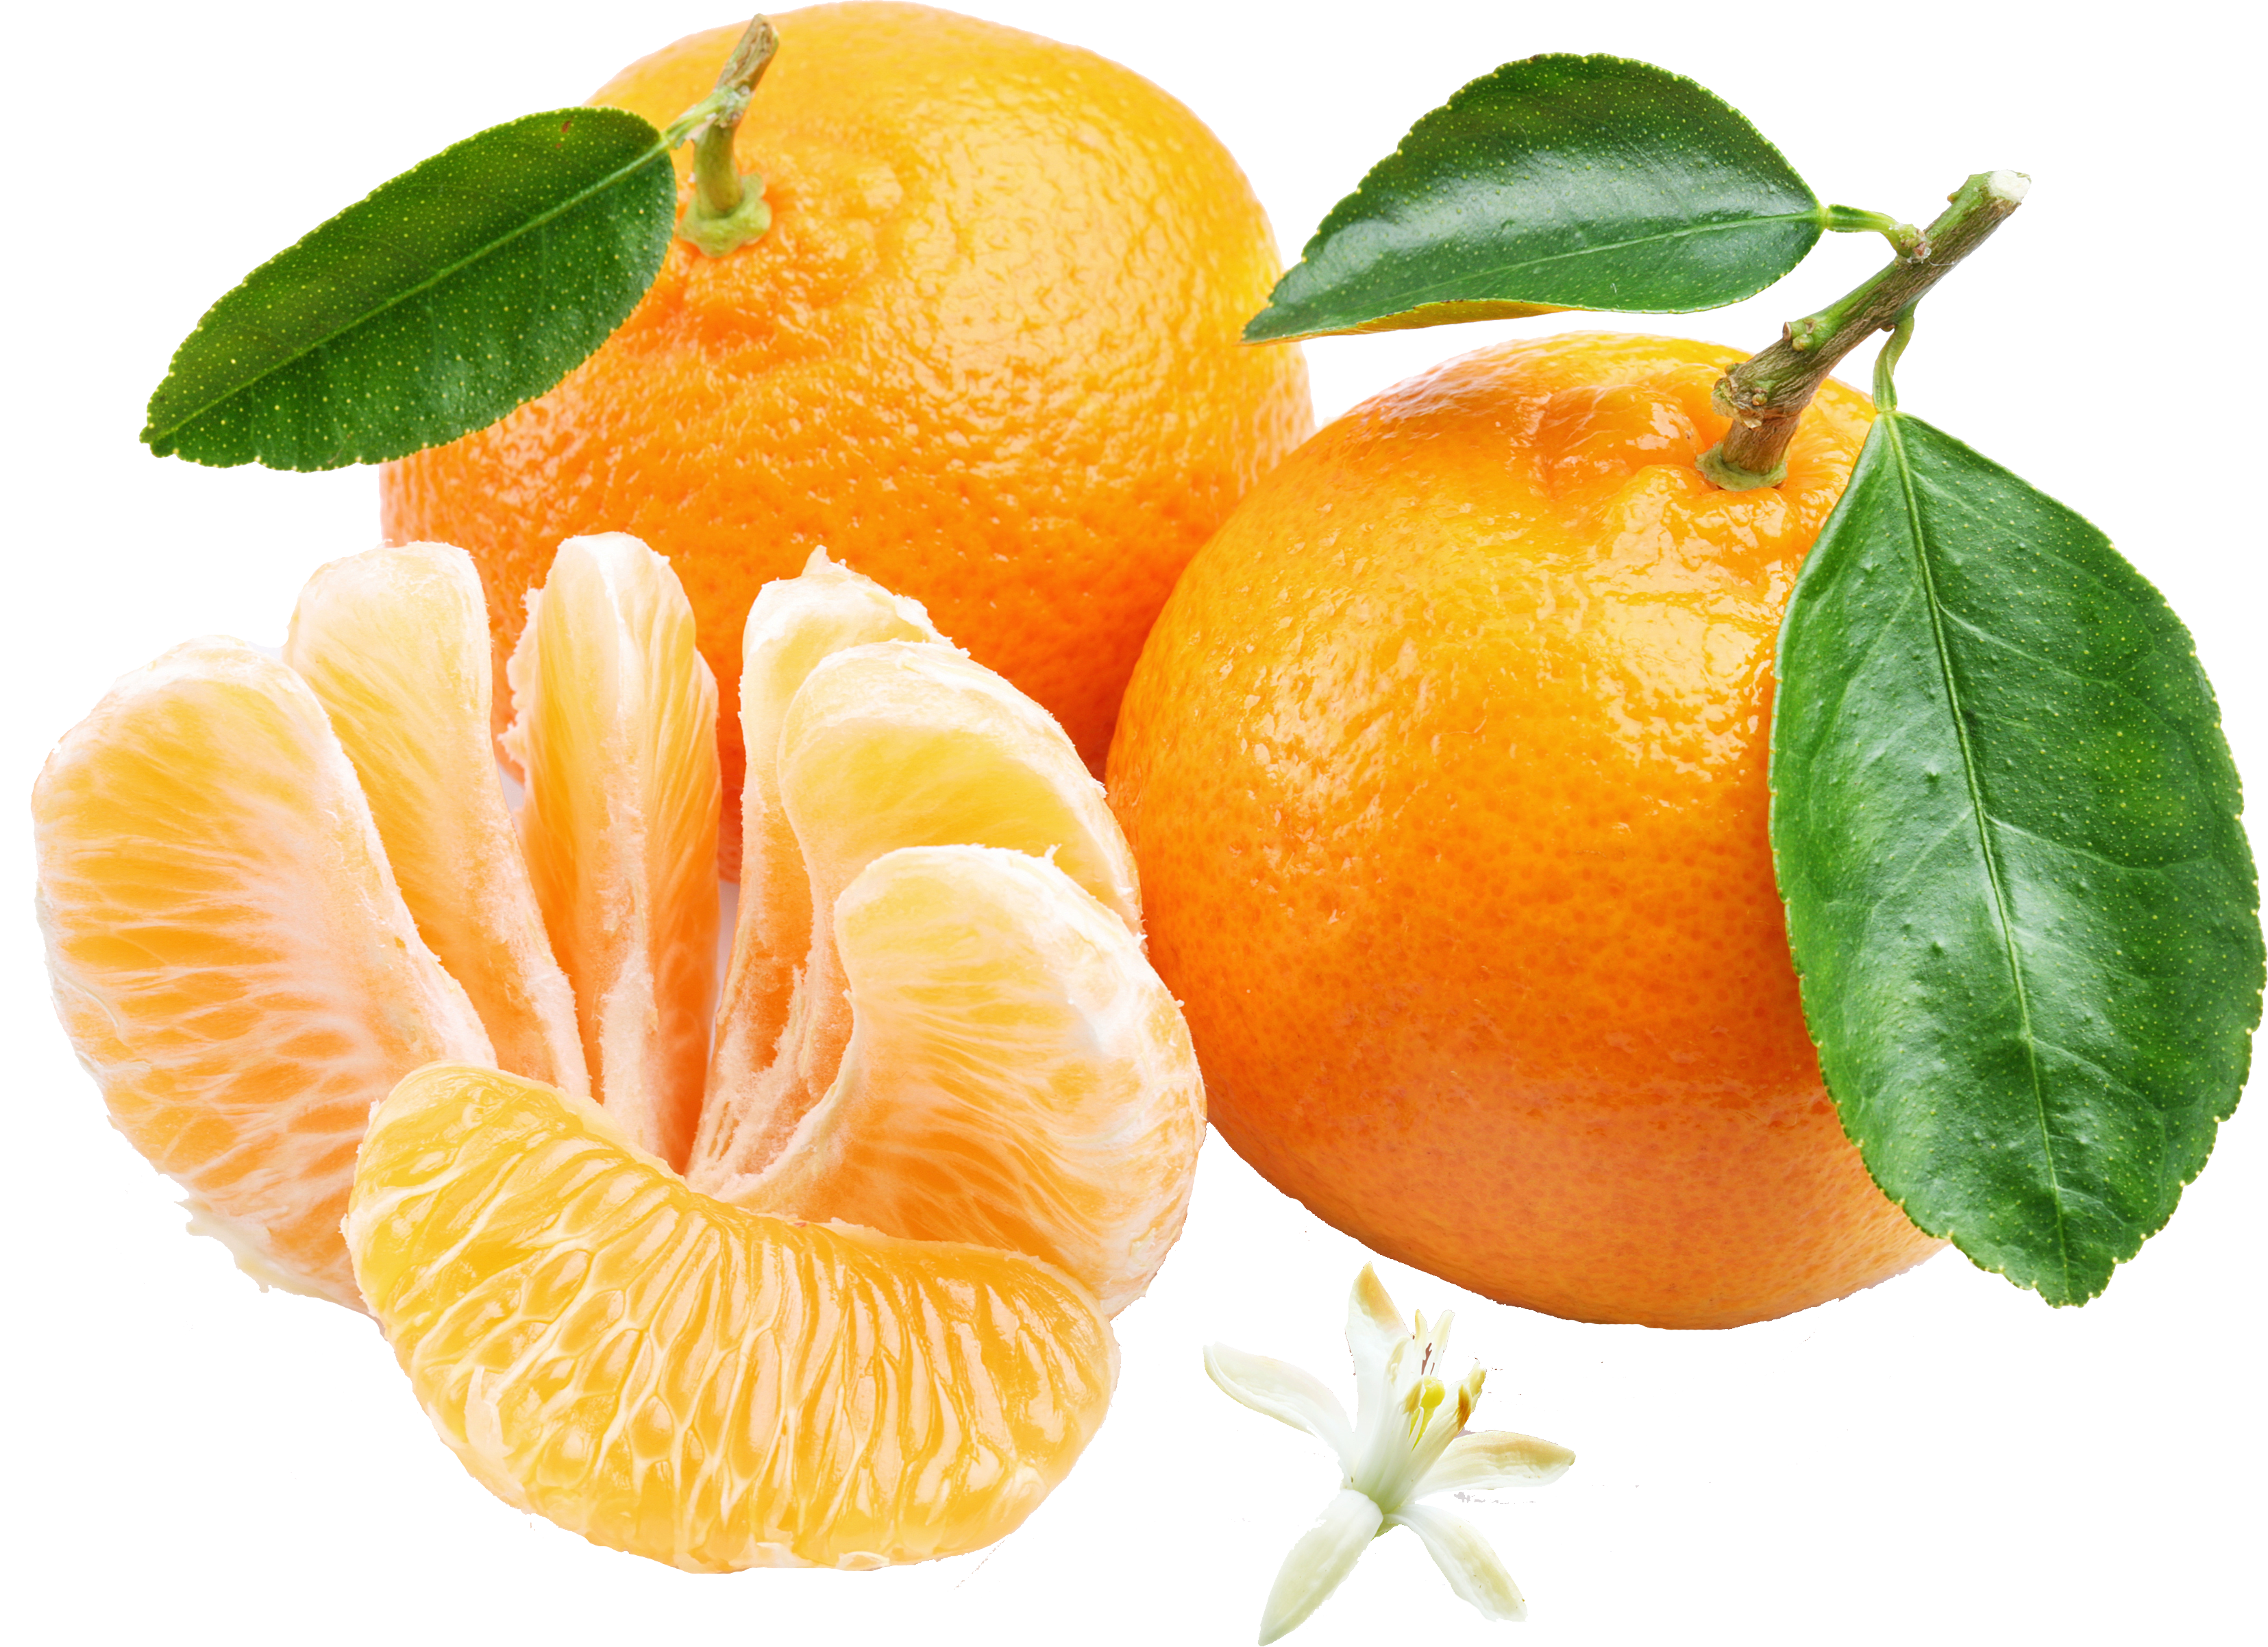 Мандарин citrus. Мандарин Танжерин. Танжерин (мандарин итальянский). ПОНКАН цитрус. Цитрус мандарин +апельсин.